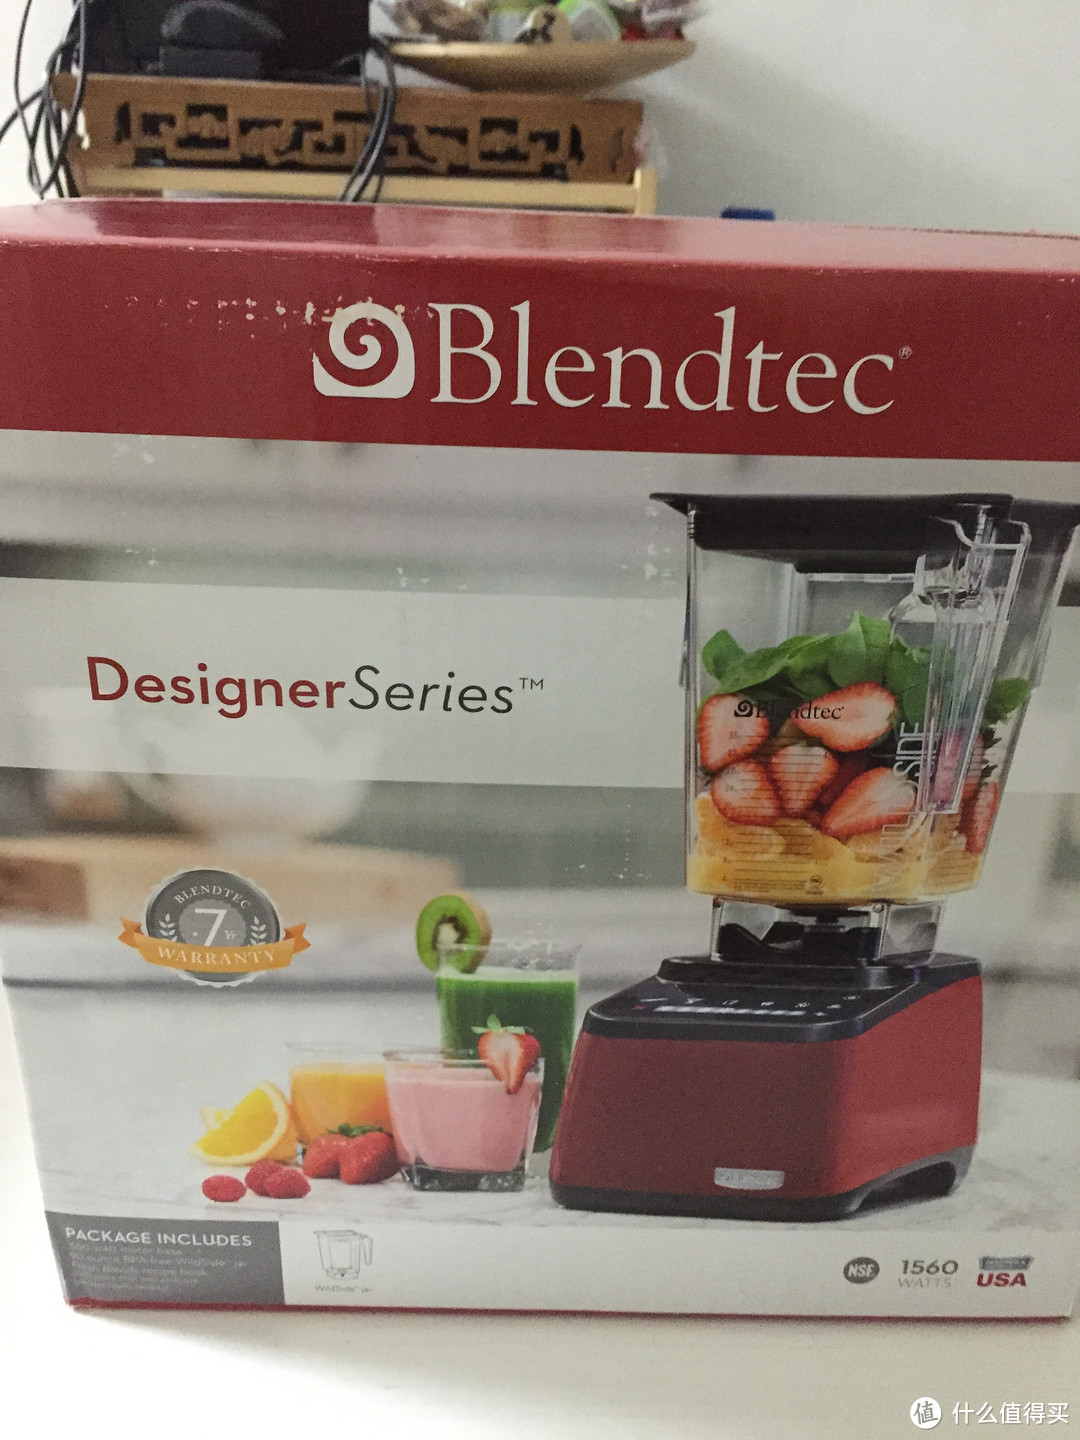 话唠妹纸海淘Blendtec disigner 料理机，附Blendtec各型号简单对比